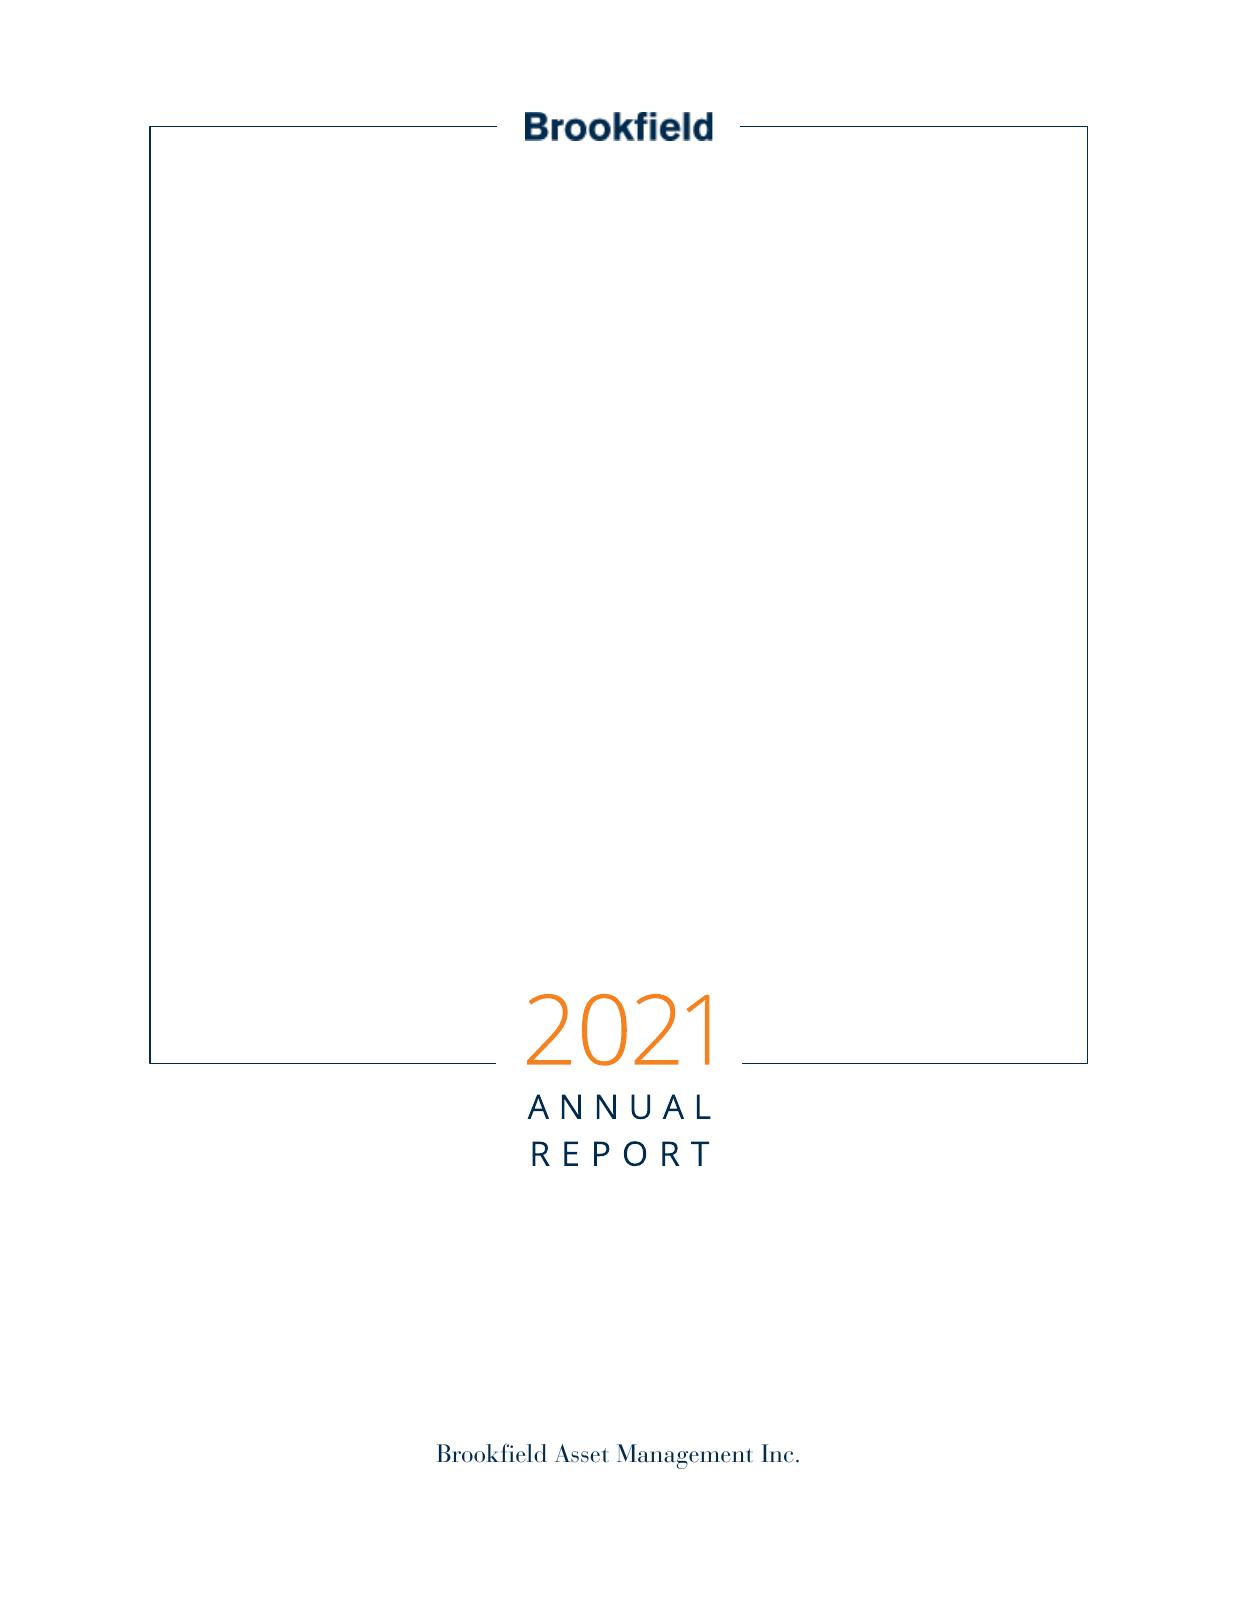 MICROFOCUS 2022 Annual Report